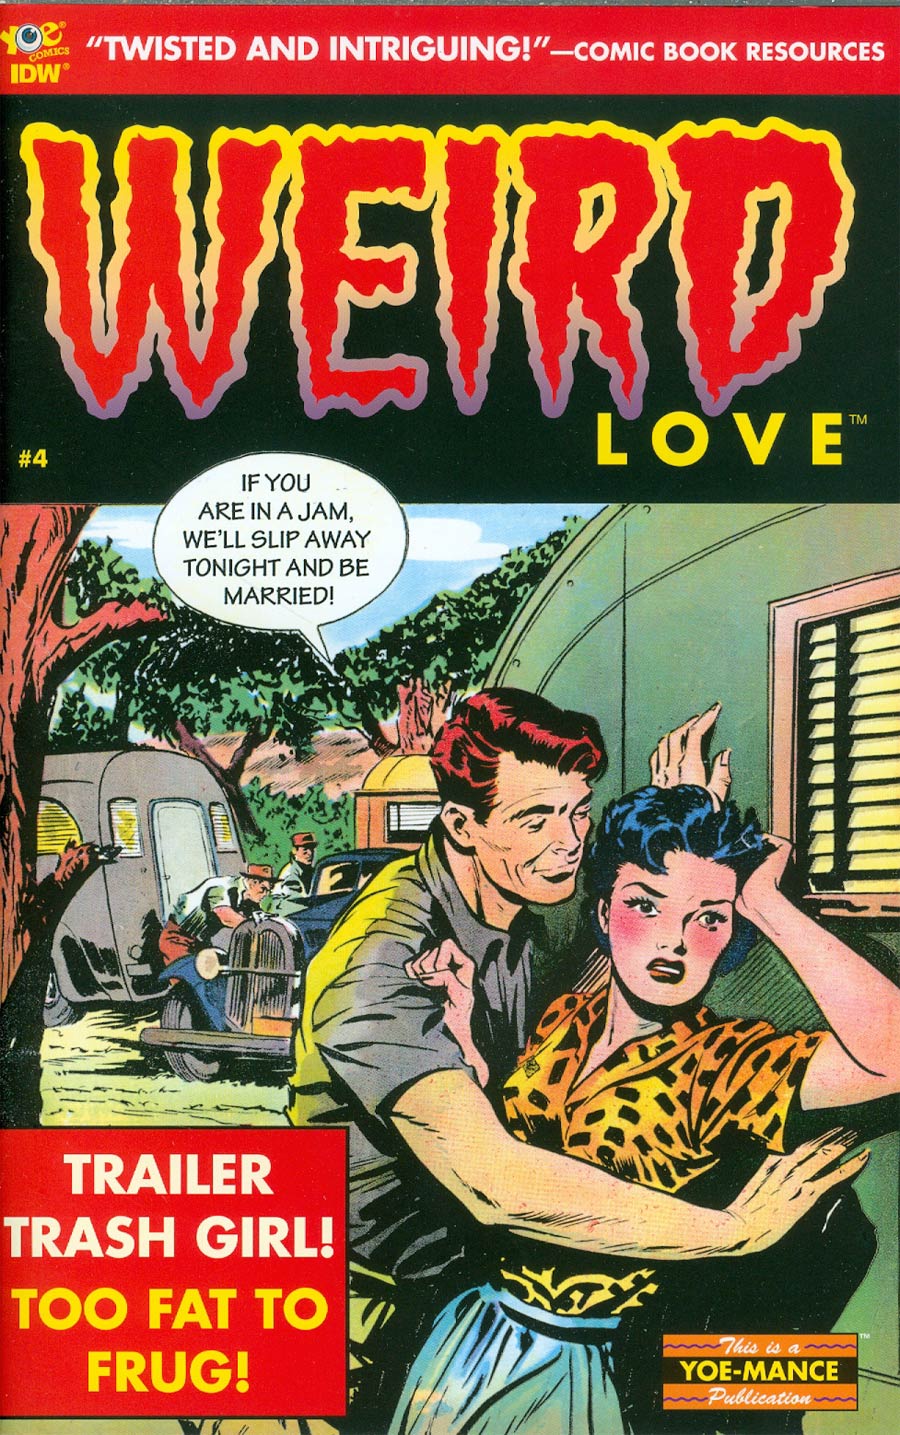 Weird Love #4